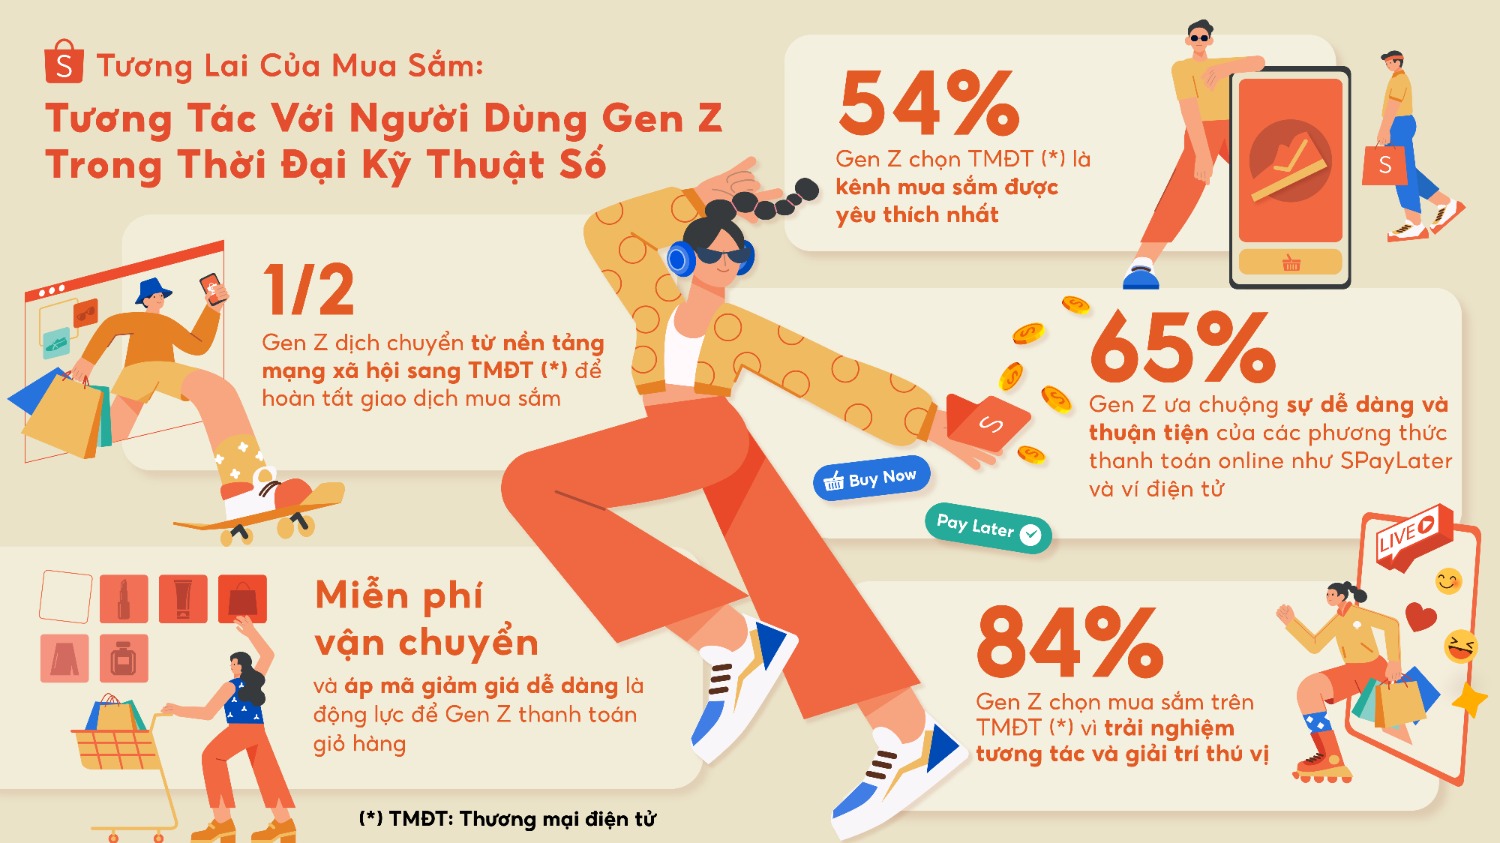 Đây là nội dung báo cáo mới nhất về hành vi mua sắm của thế hệ Gen Z tại Việt Nam do Kantar Profiles thực hiện dưới sự ủy quyền của Shopee.